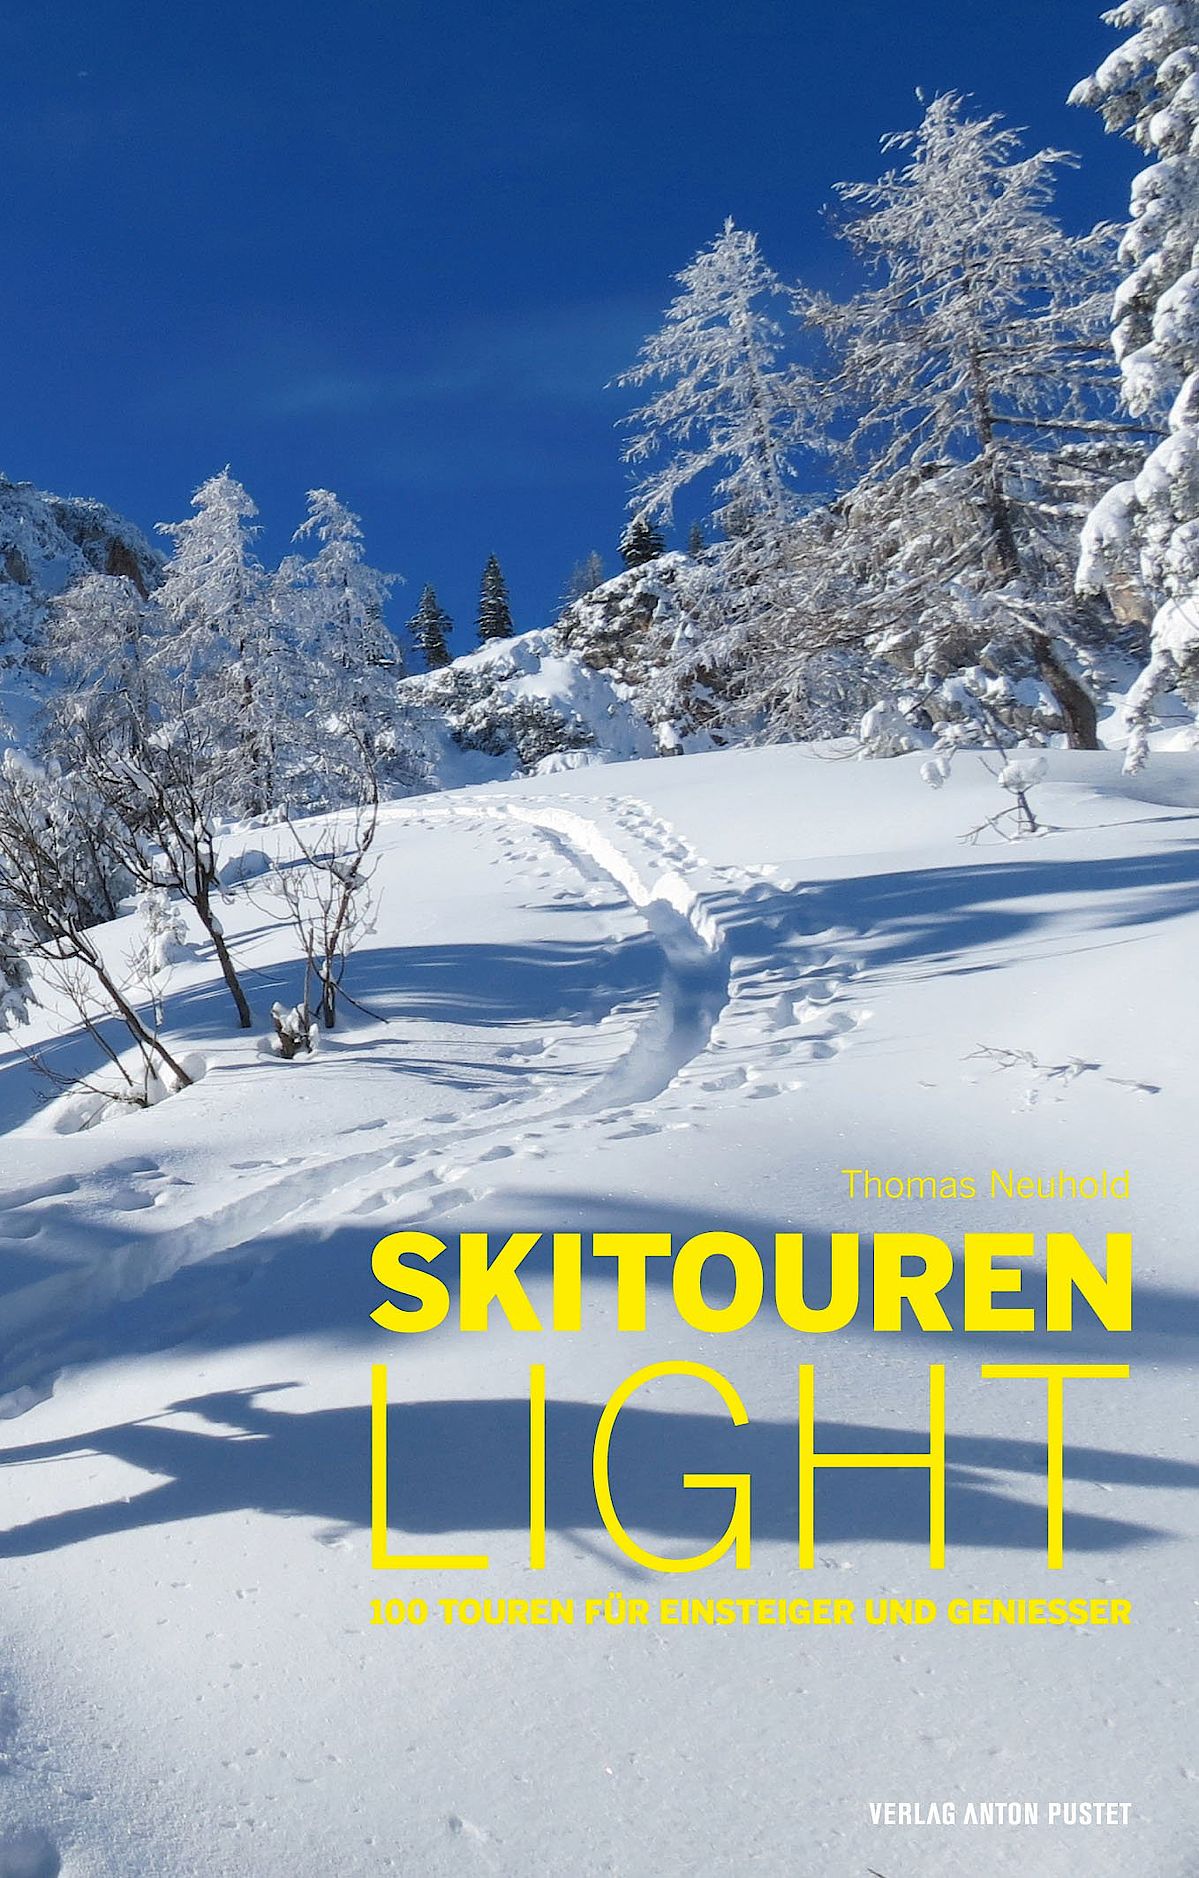 Skitouren light von Thomas Neuhold